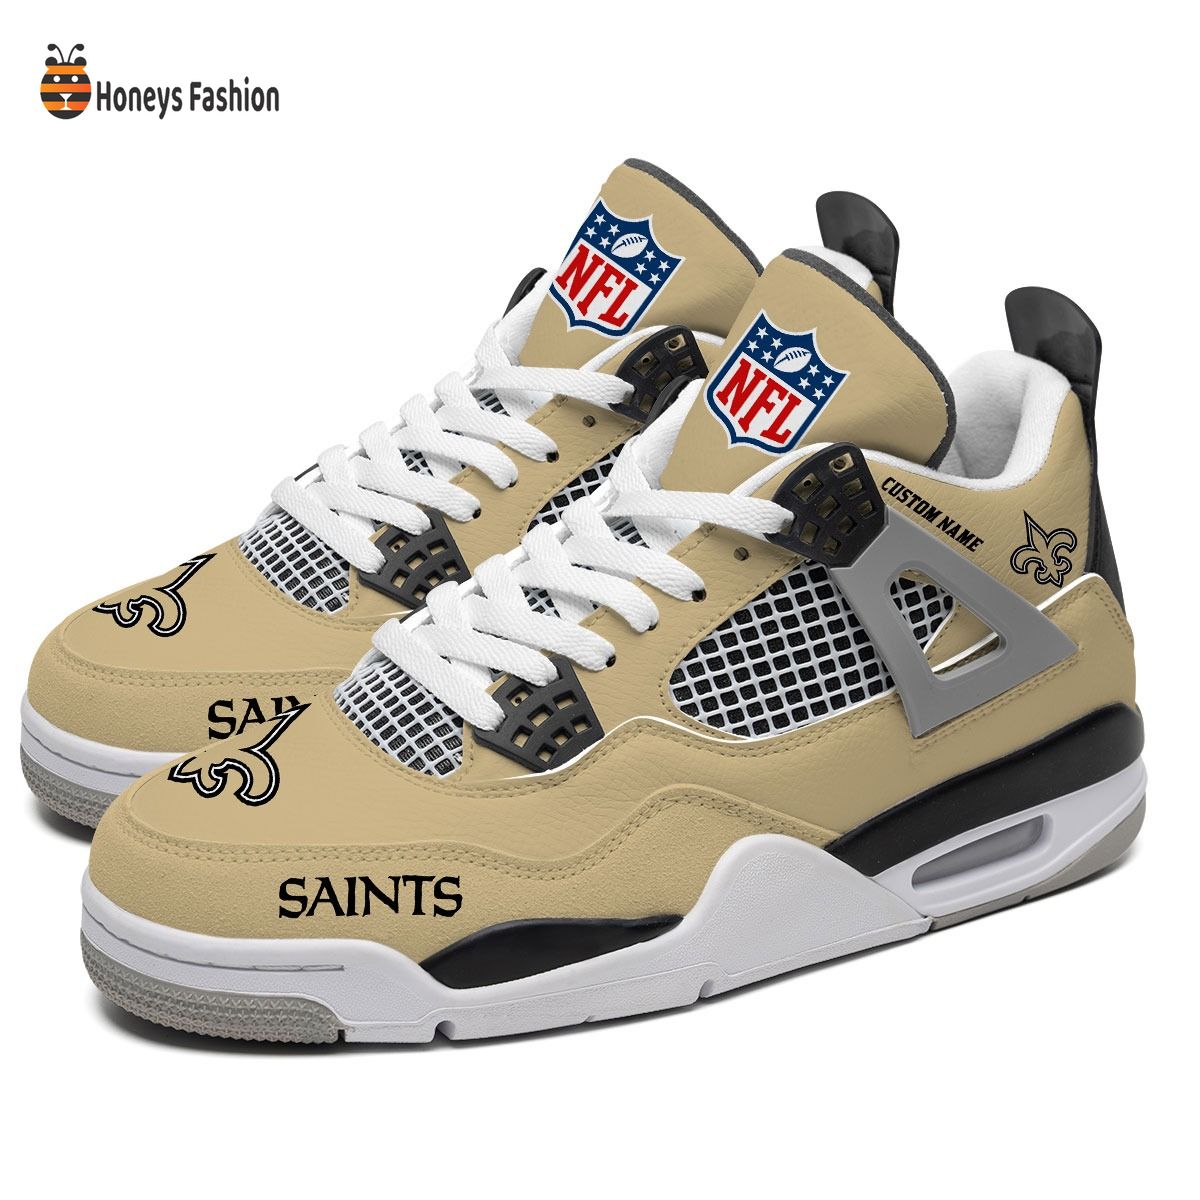 New Orleans Saints NFL Air Jordan 4 Shoes